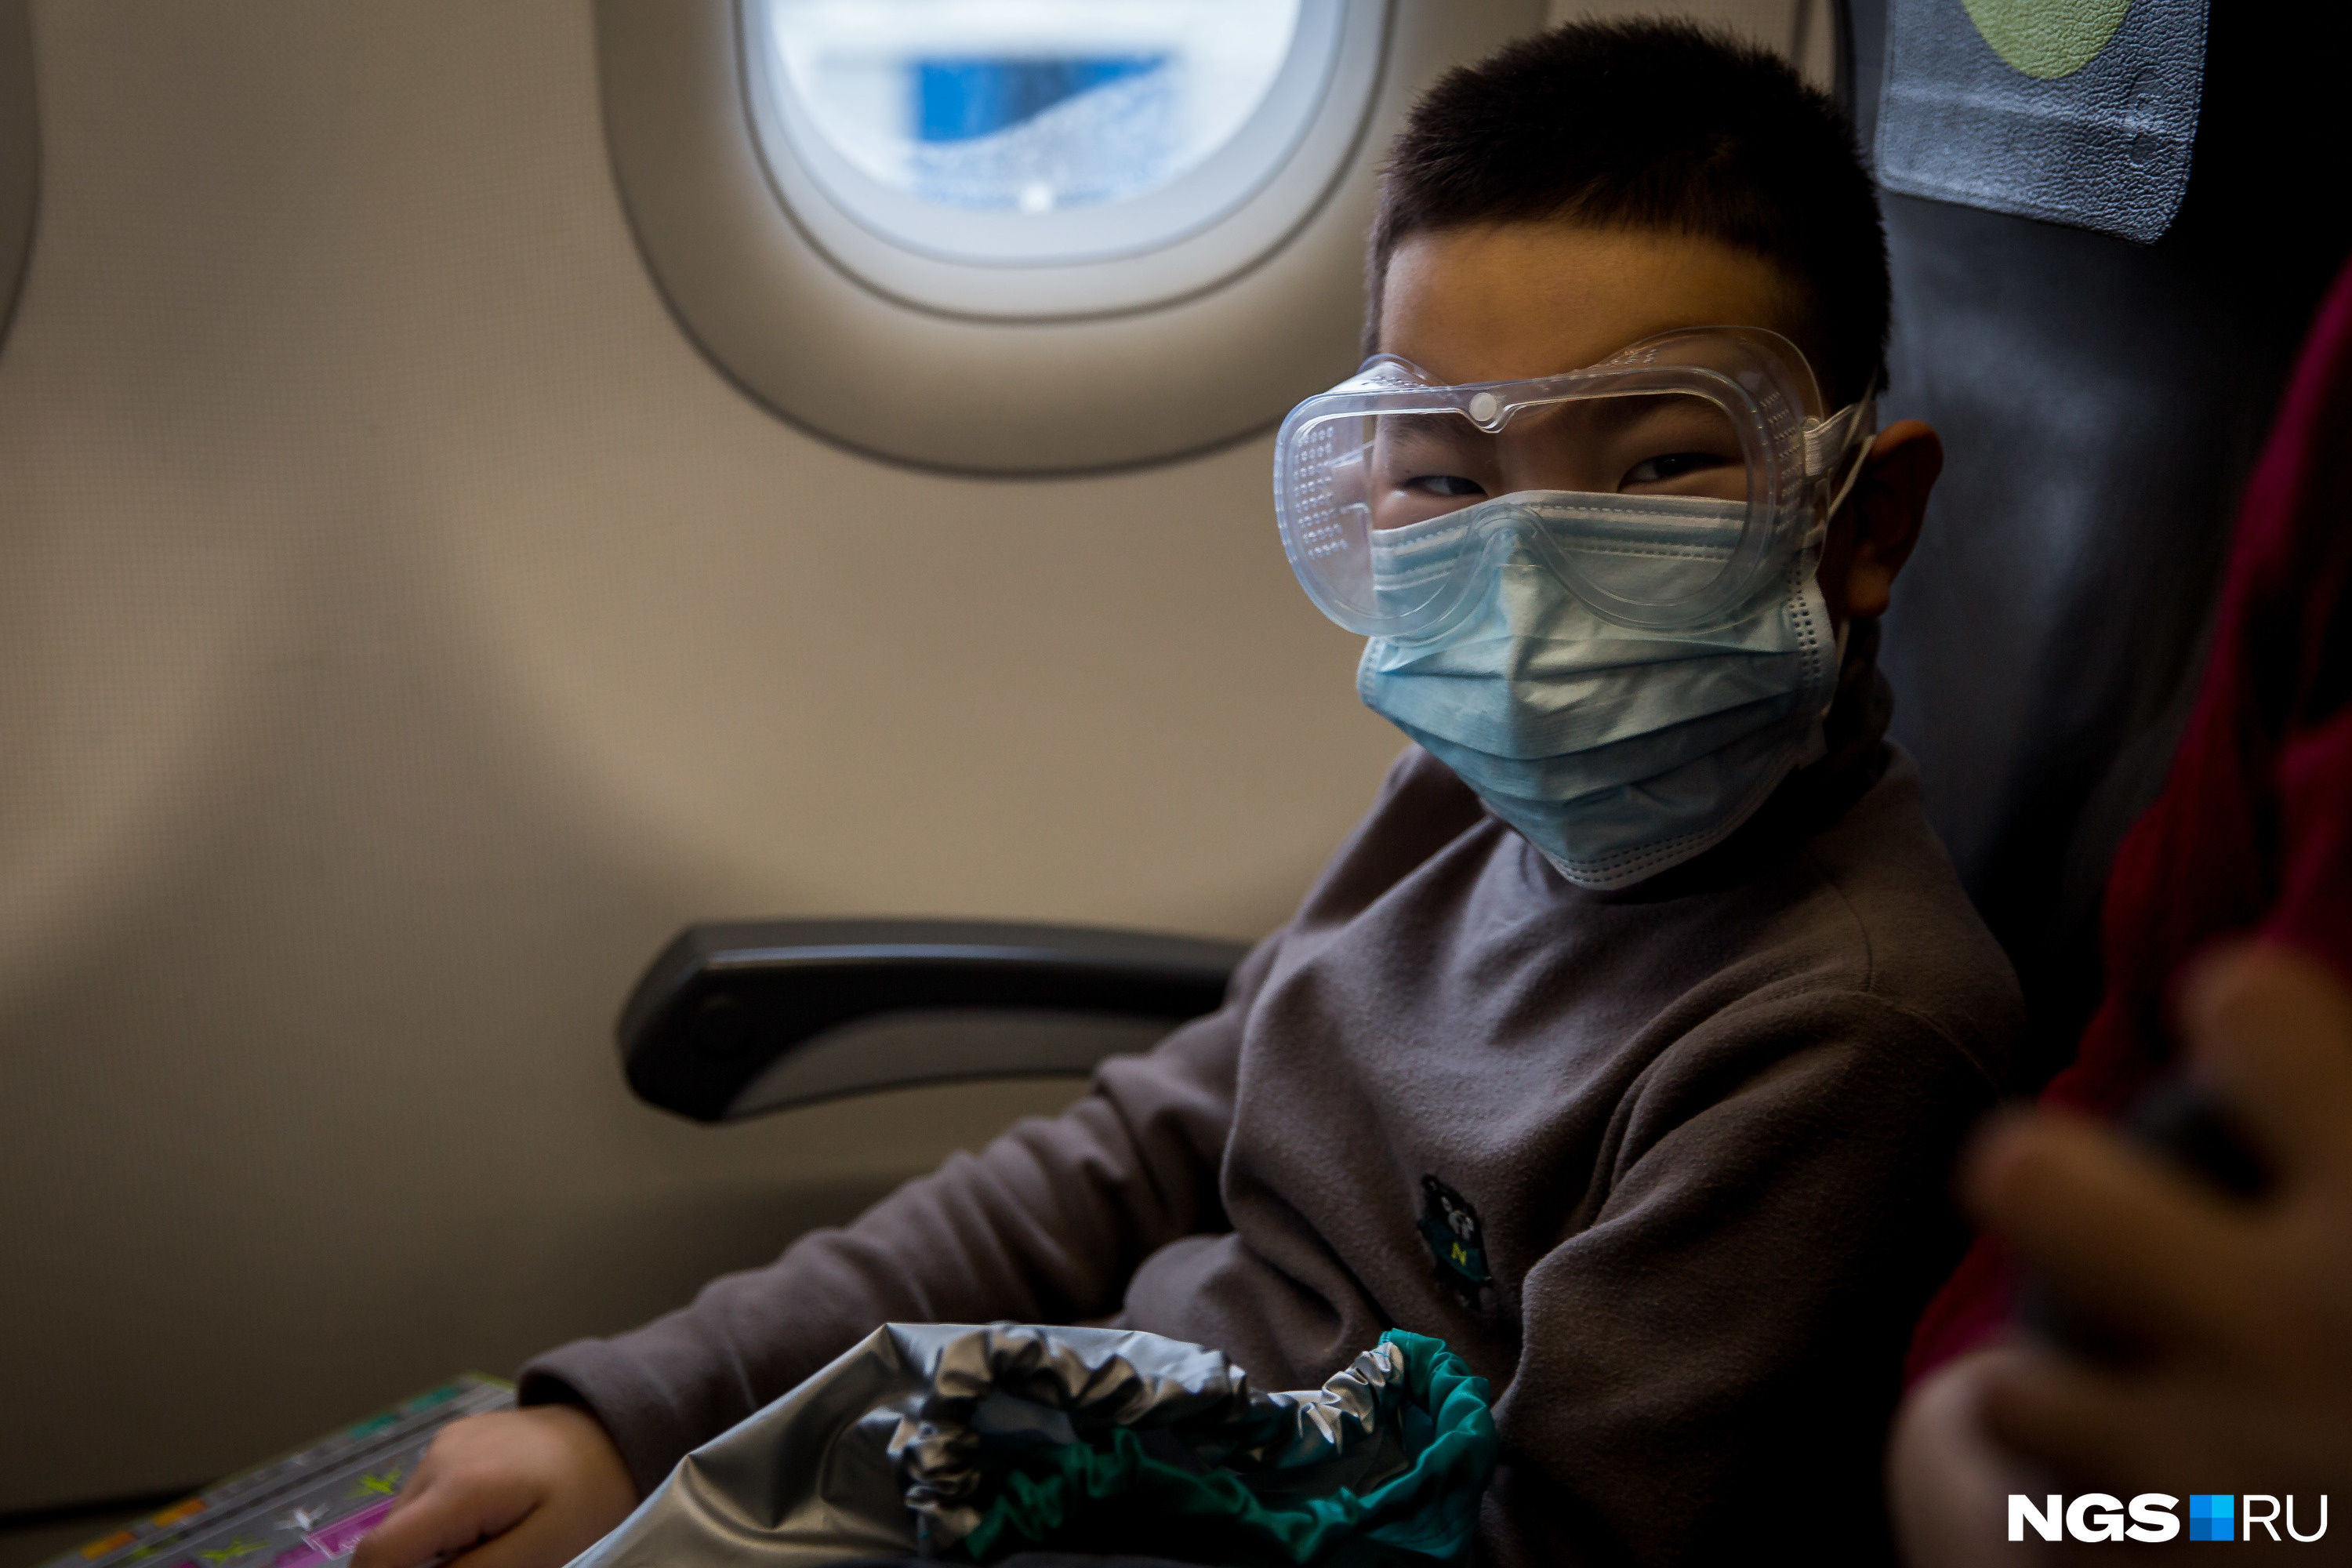 Некоторые пассажиры предпочитают защищаться не только медицинскими масками, но ещё и очками, плотно прилегающими к коже